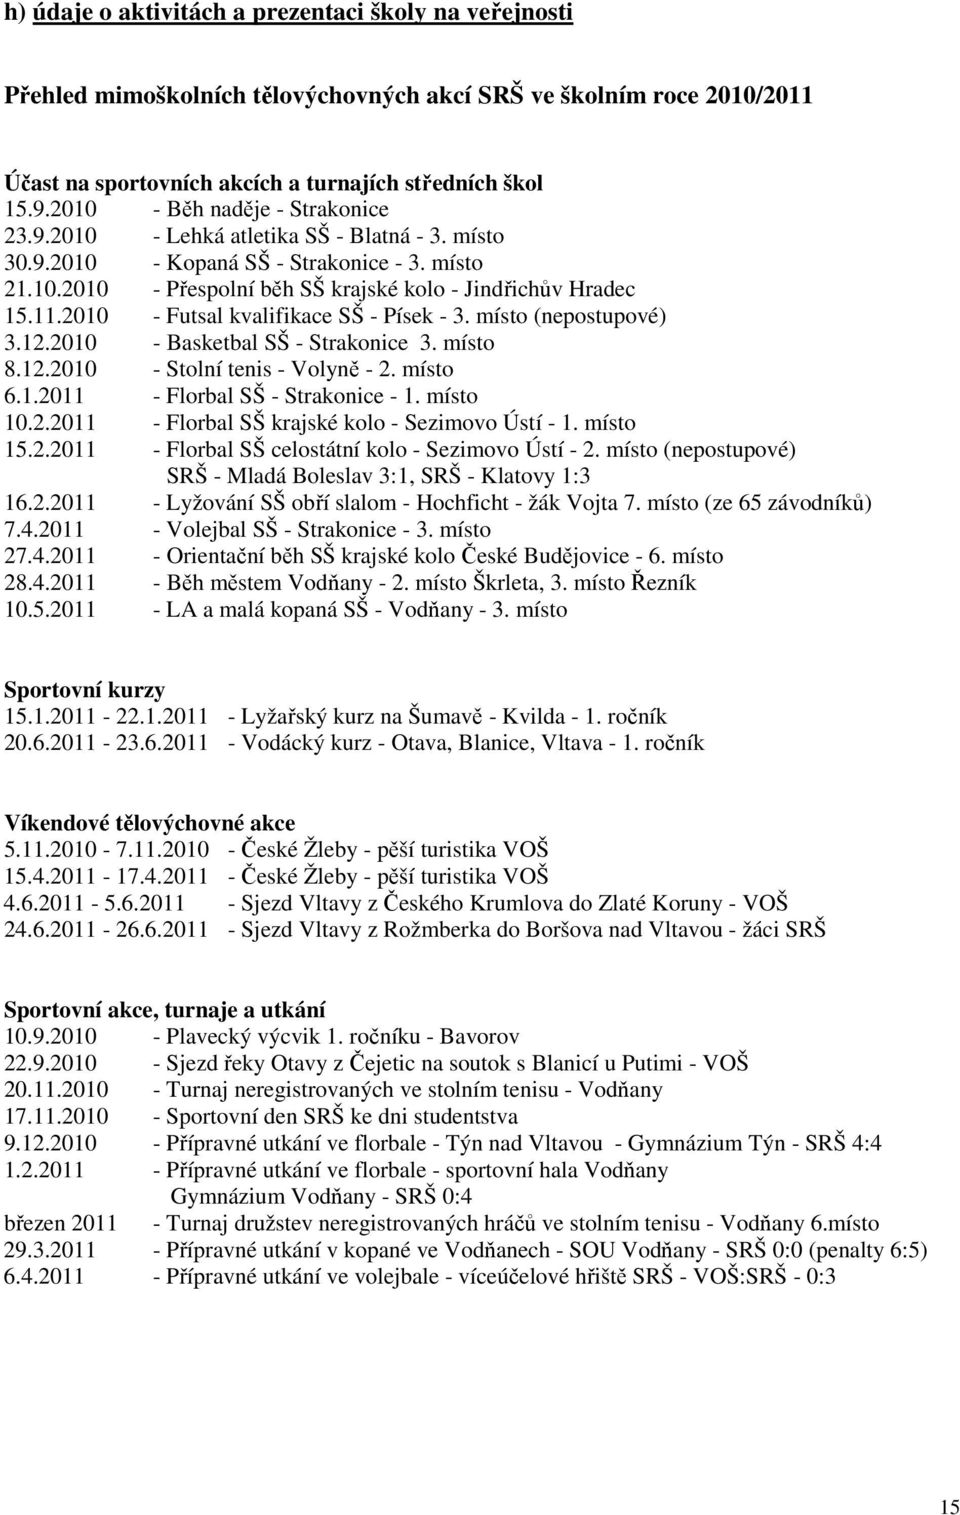 2010 - Futsal kvalifikace SŠ - Písek - 3. místo (nepostupové) 3.12.2010 - Basketbal SŠ - Strakonice 3. místo 8.12.2010 - Stolní tenis - Volyně - 2. místo 6.1.2011 - Florbal SŠ - Strakonice - 1.